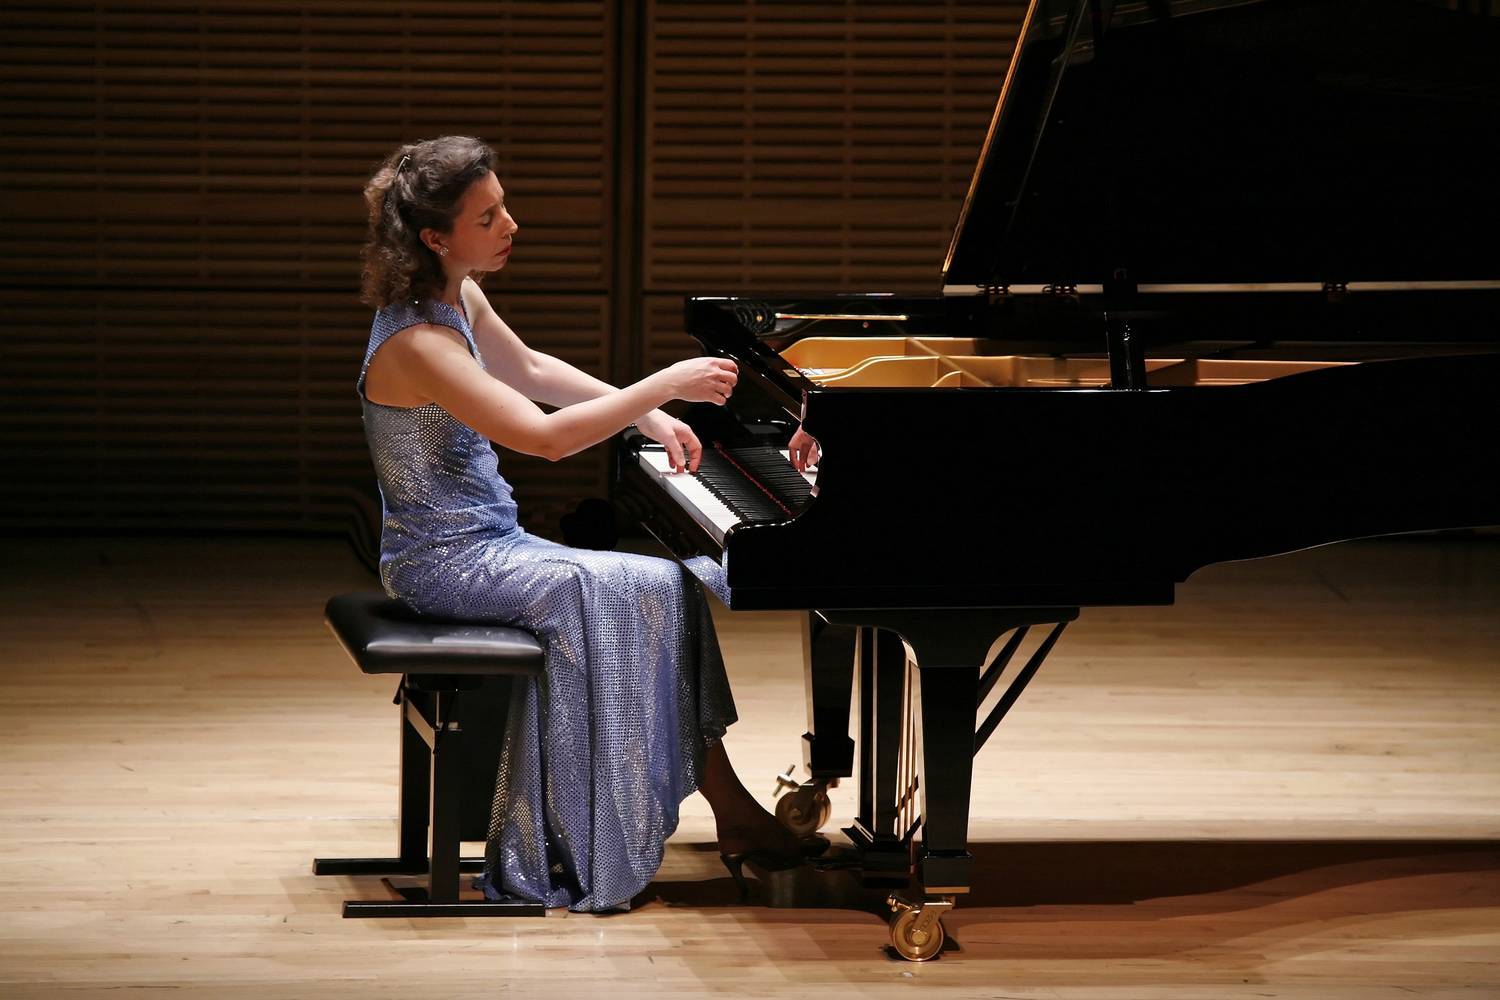 Angela Hewitt Piano Recital